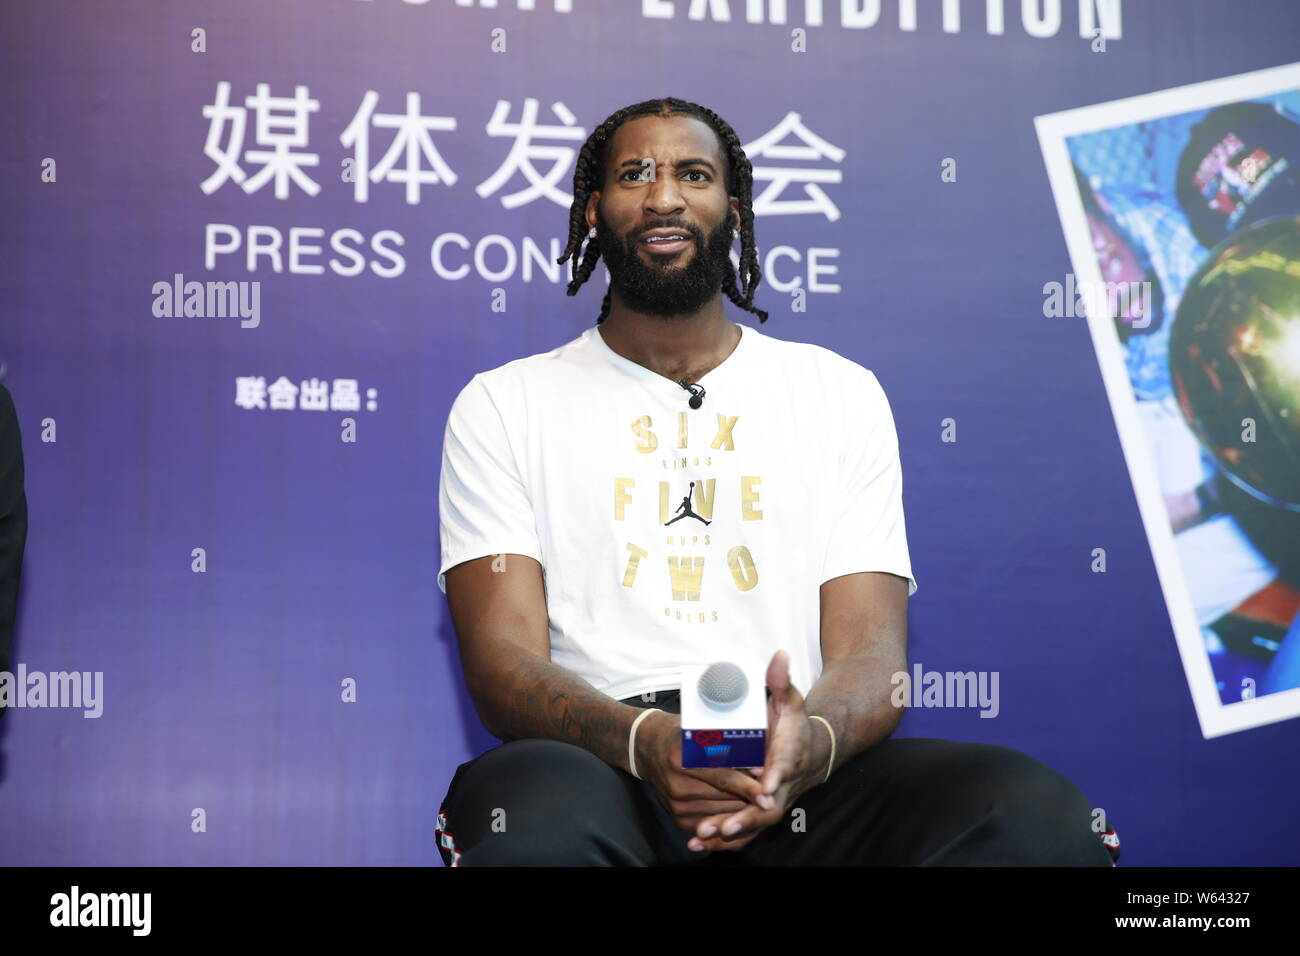 NBA-Star Andre Drummond von Detroit Pistons besucht eine Pressekonferenz für die NBA Meisterschaft Ausstellung in Shanghai, China, 31. August 2018. Stockfoto